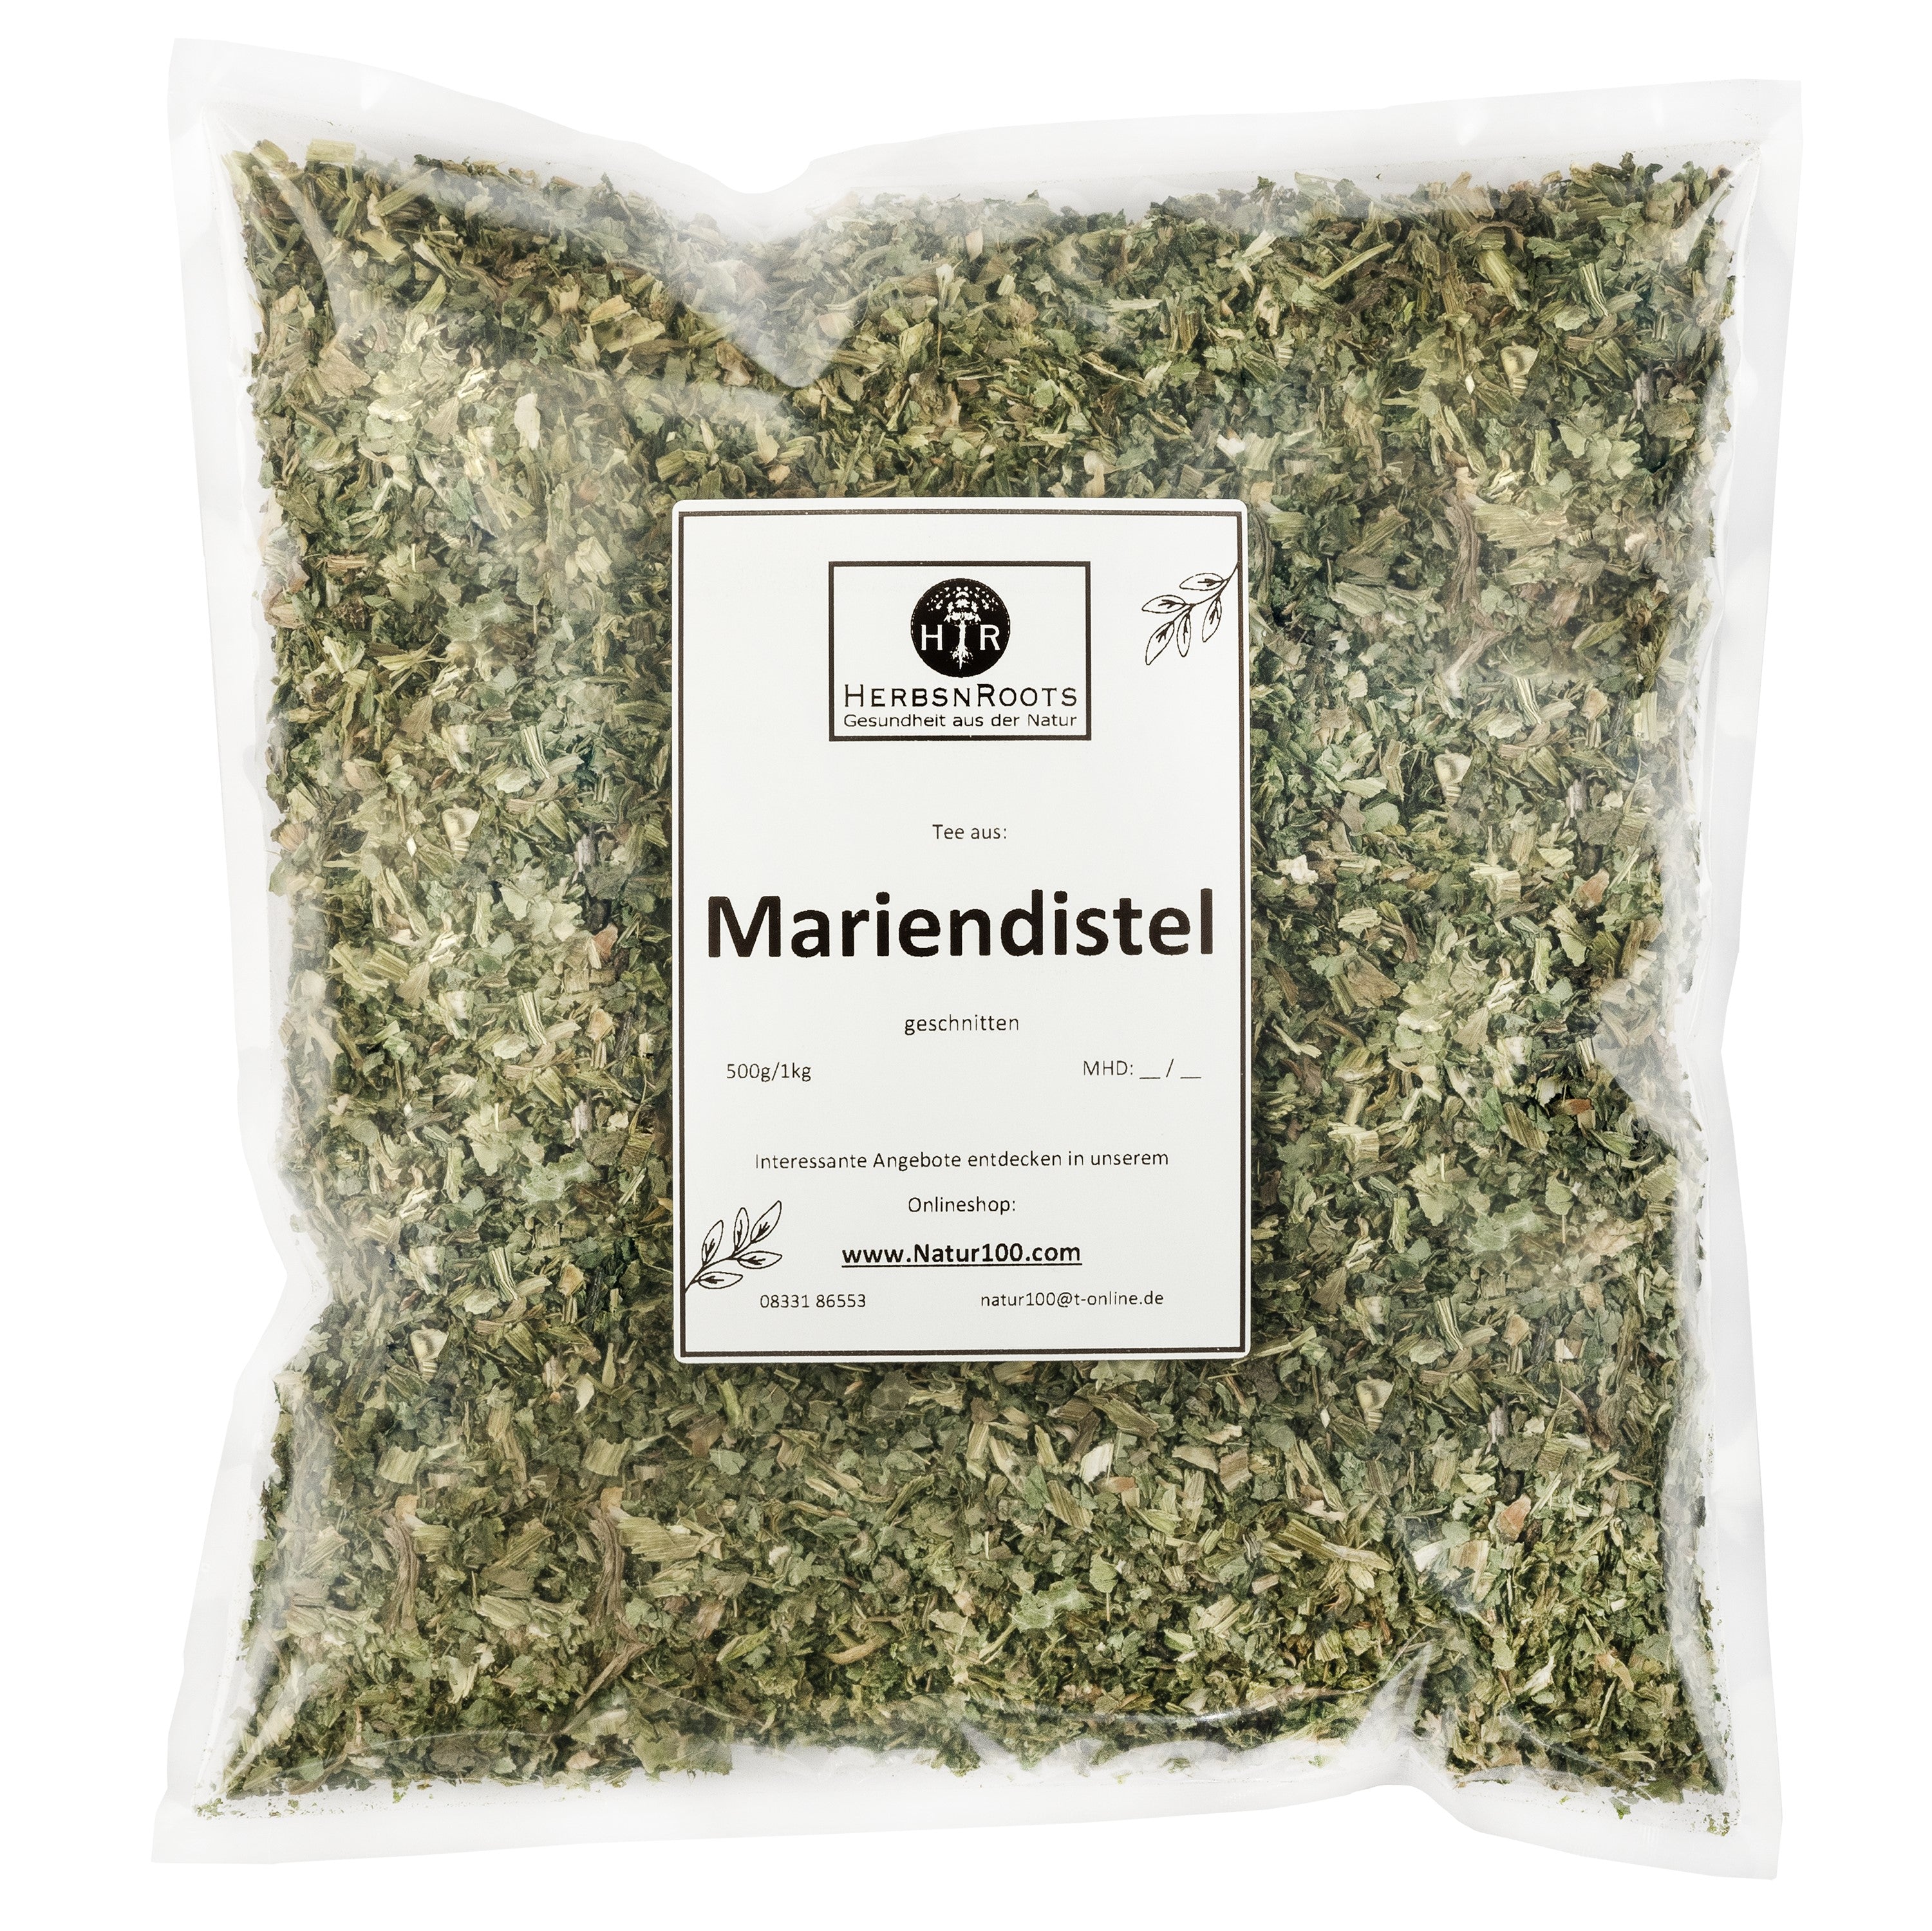 Mariendistel Kraut "Leber" - Tee